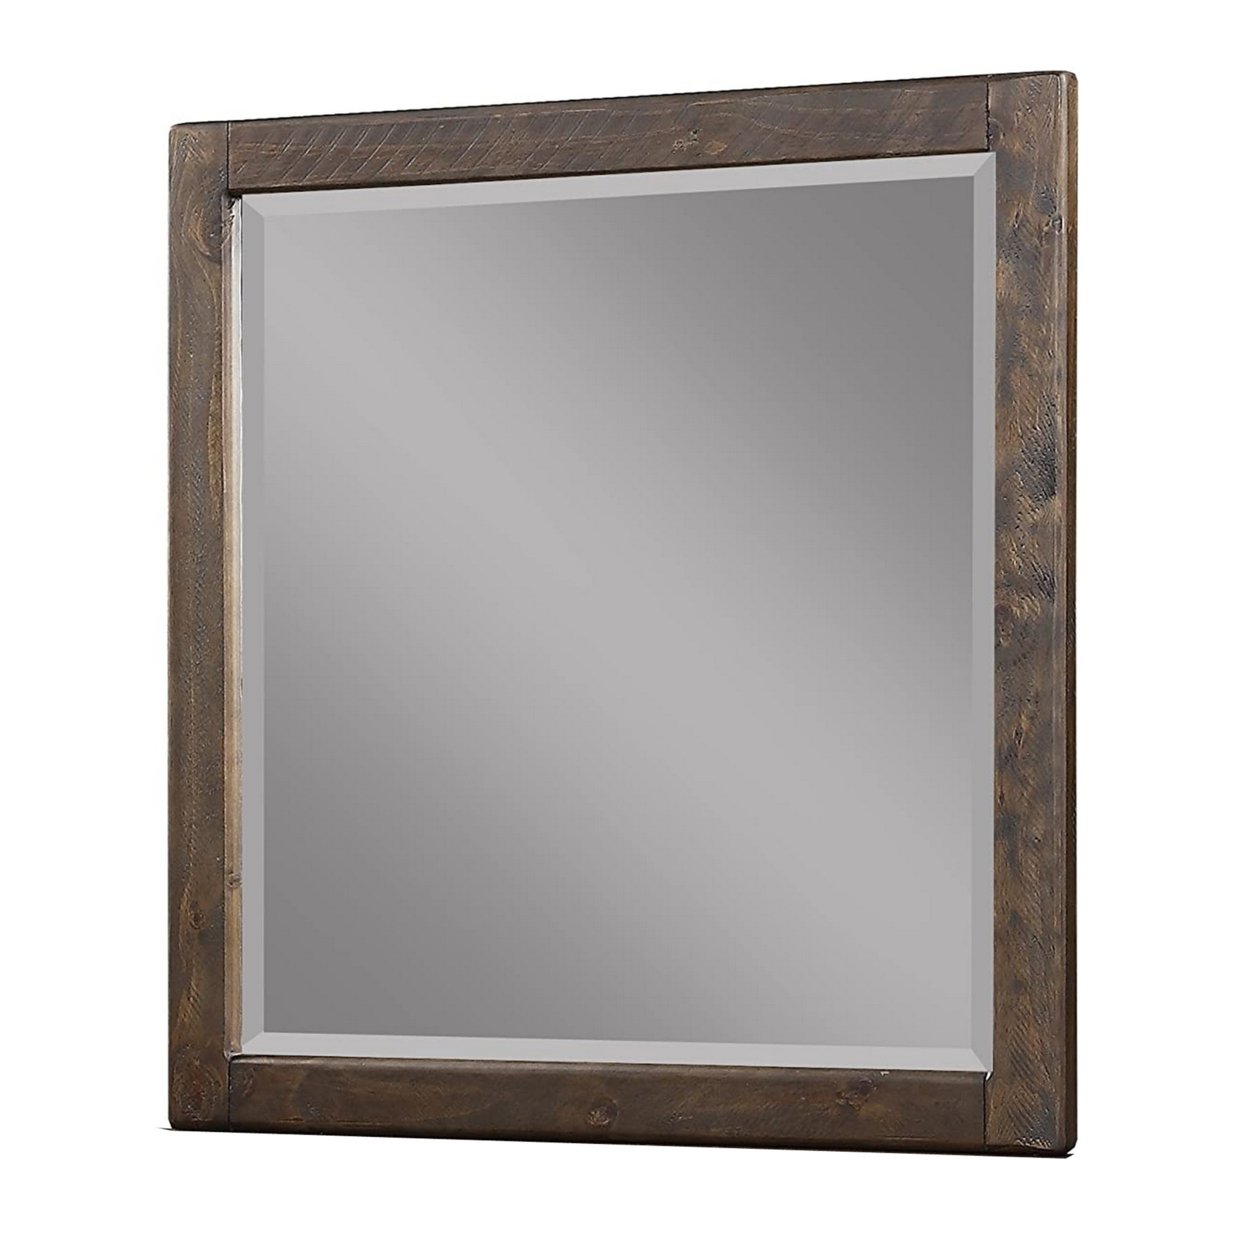 Rough Sawn Texture Wooden Frame Rectangular Dresser Mirror, Espresso Brown- Saltoro Sherpi